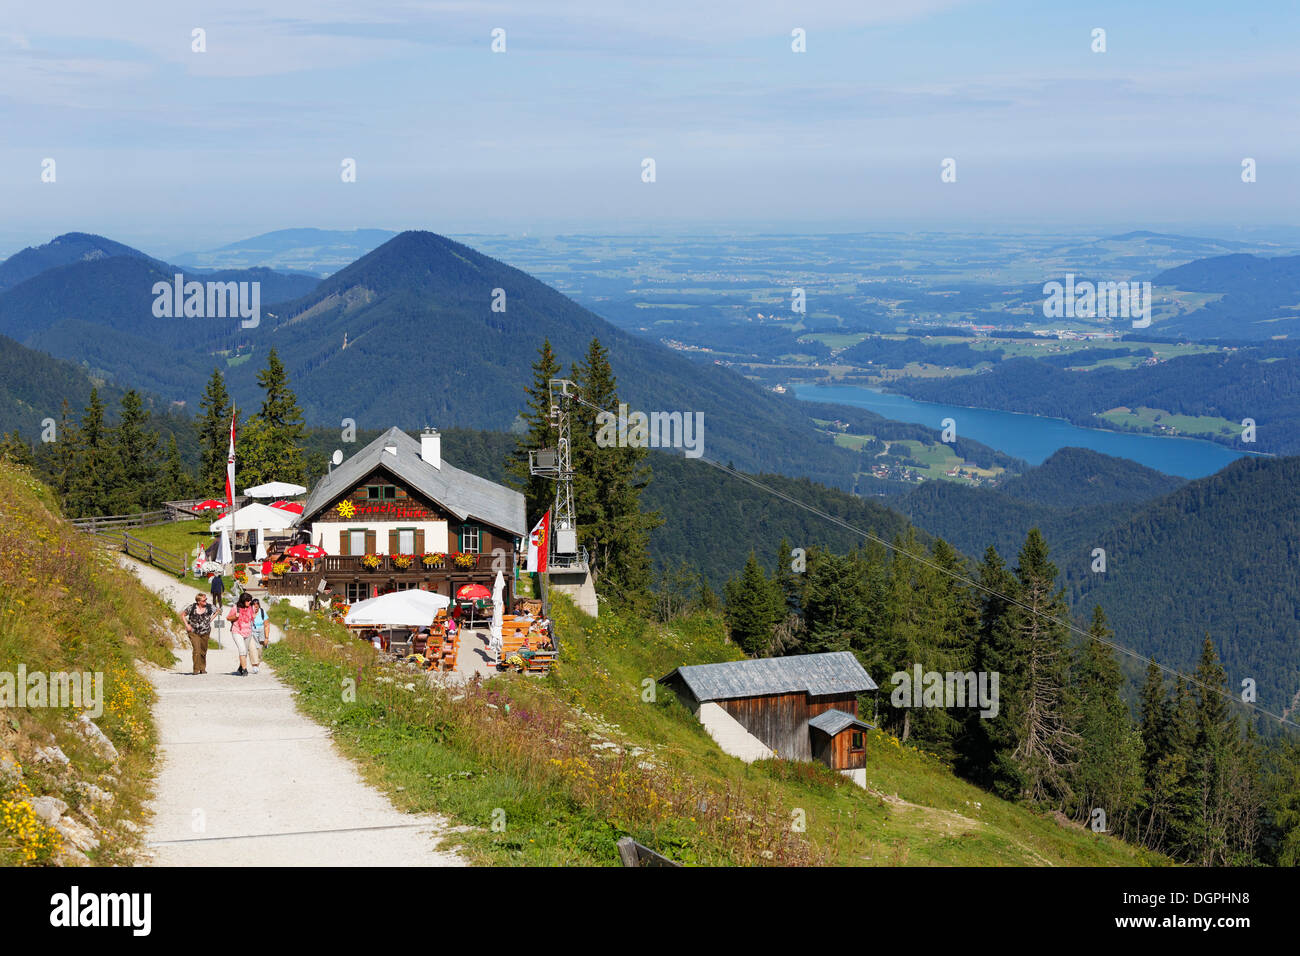 Zwoelferhorn Franzls Hut sur la montagne, sur le lac de Fuschl à droite, Sankt Gilgen, Salzkammergut, Salzburg, Autriche Etat Banque D'Images